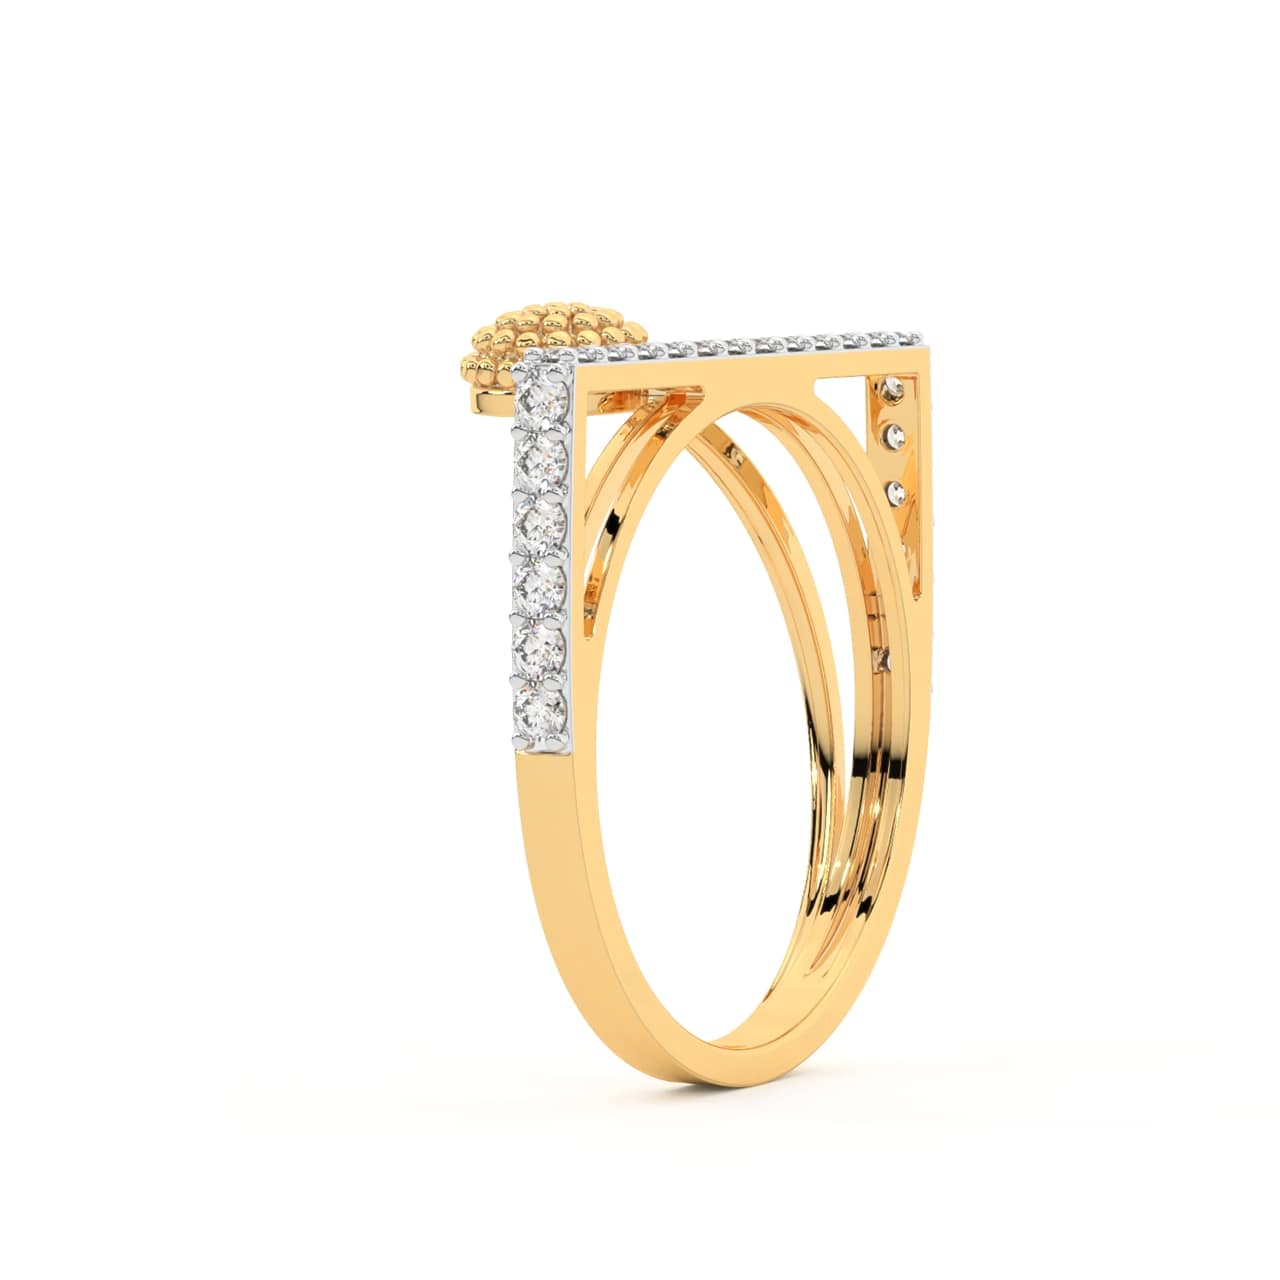 Ranica Round Diamond Engagement Ring